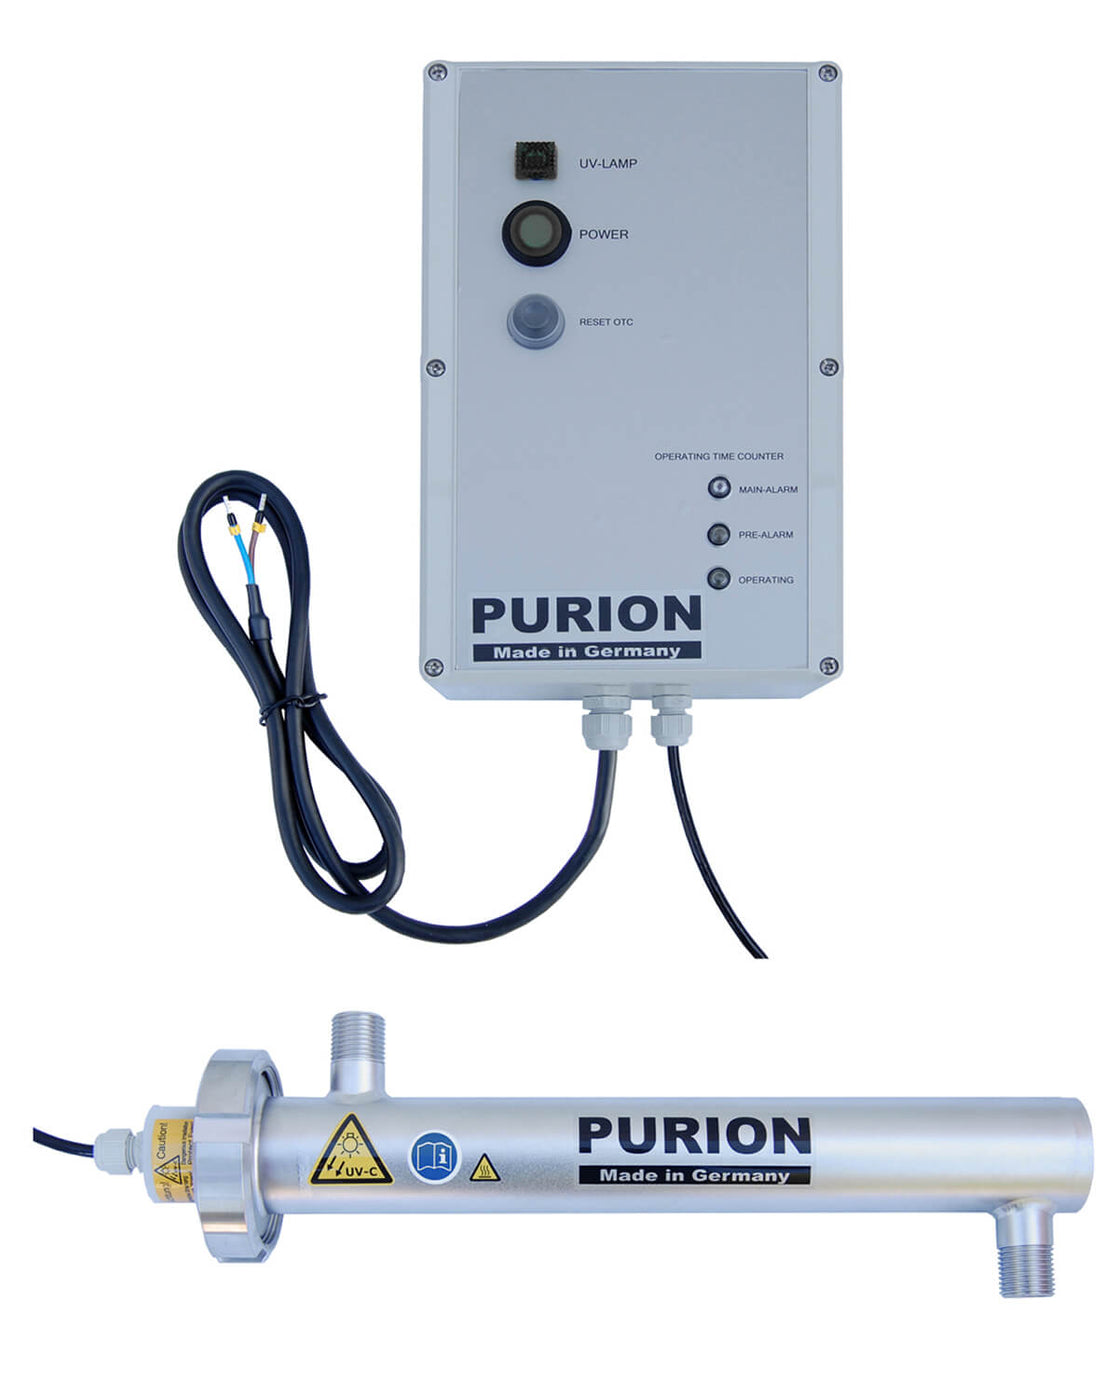 Die innovative Trinkwasseraufbereitungslösung der PURION GmbH, der PURION 500 12 V/24 V DC OTC, ist für autarkes Leben konzipiert. Mit seiner fortschrittlichen Desinfektionsanlagentechnologie sorgt der PURION 500 12 V/24 V DC OTC für die Reinigung von Wasser.